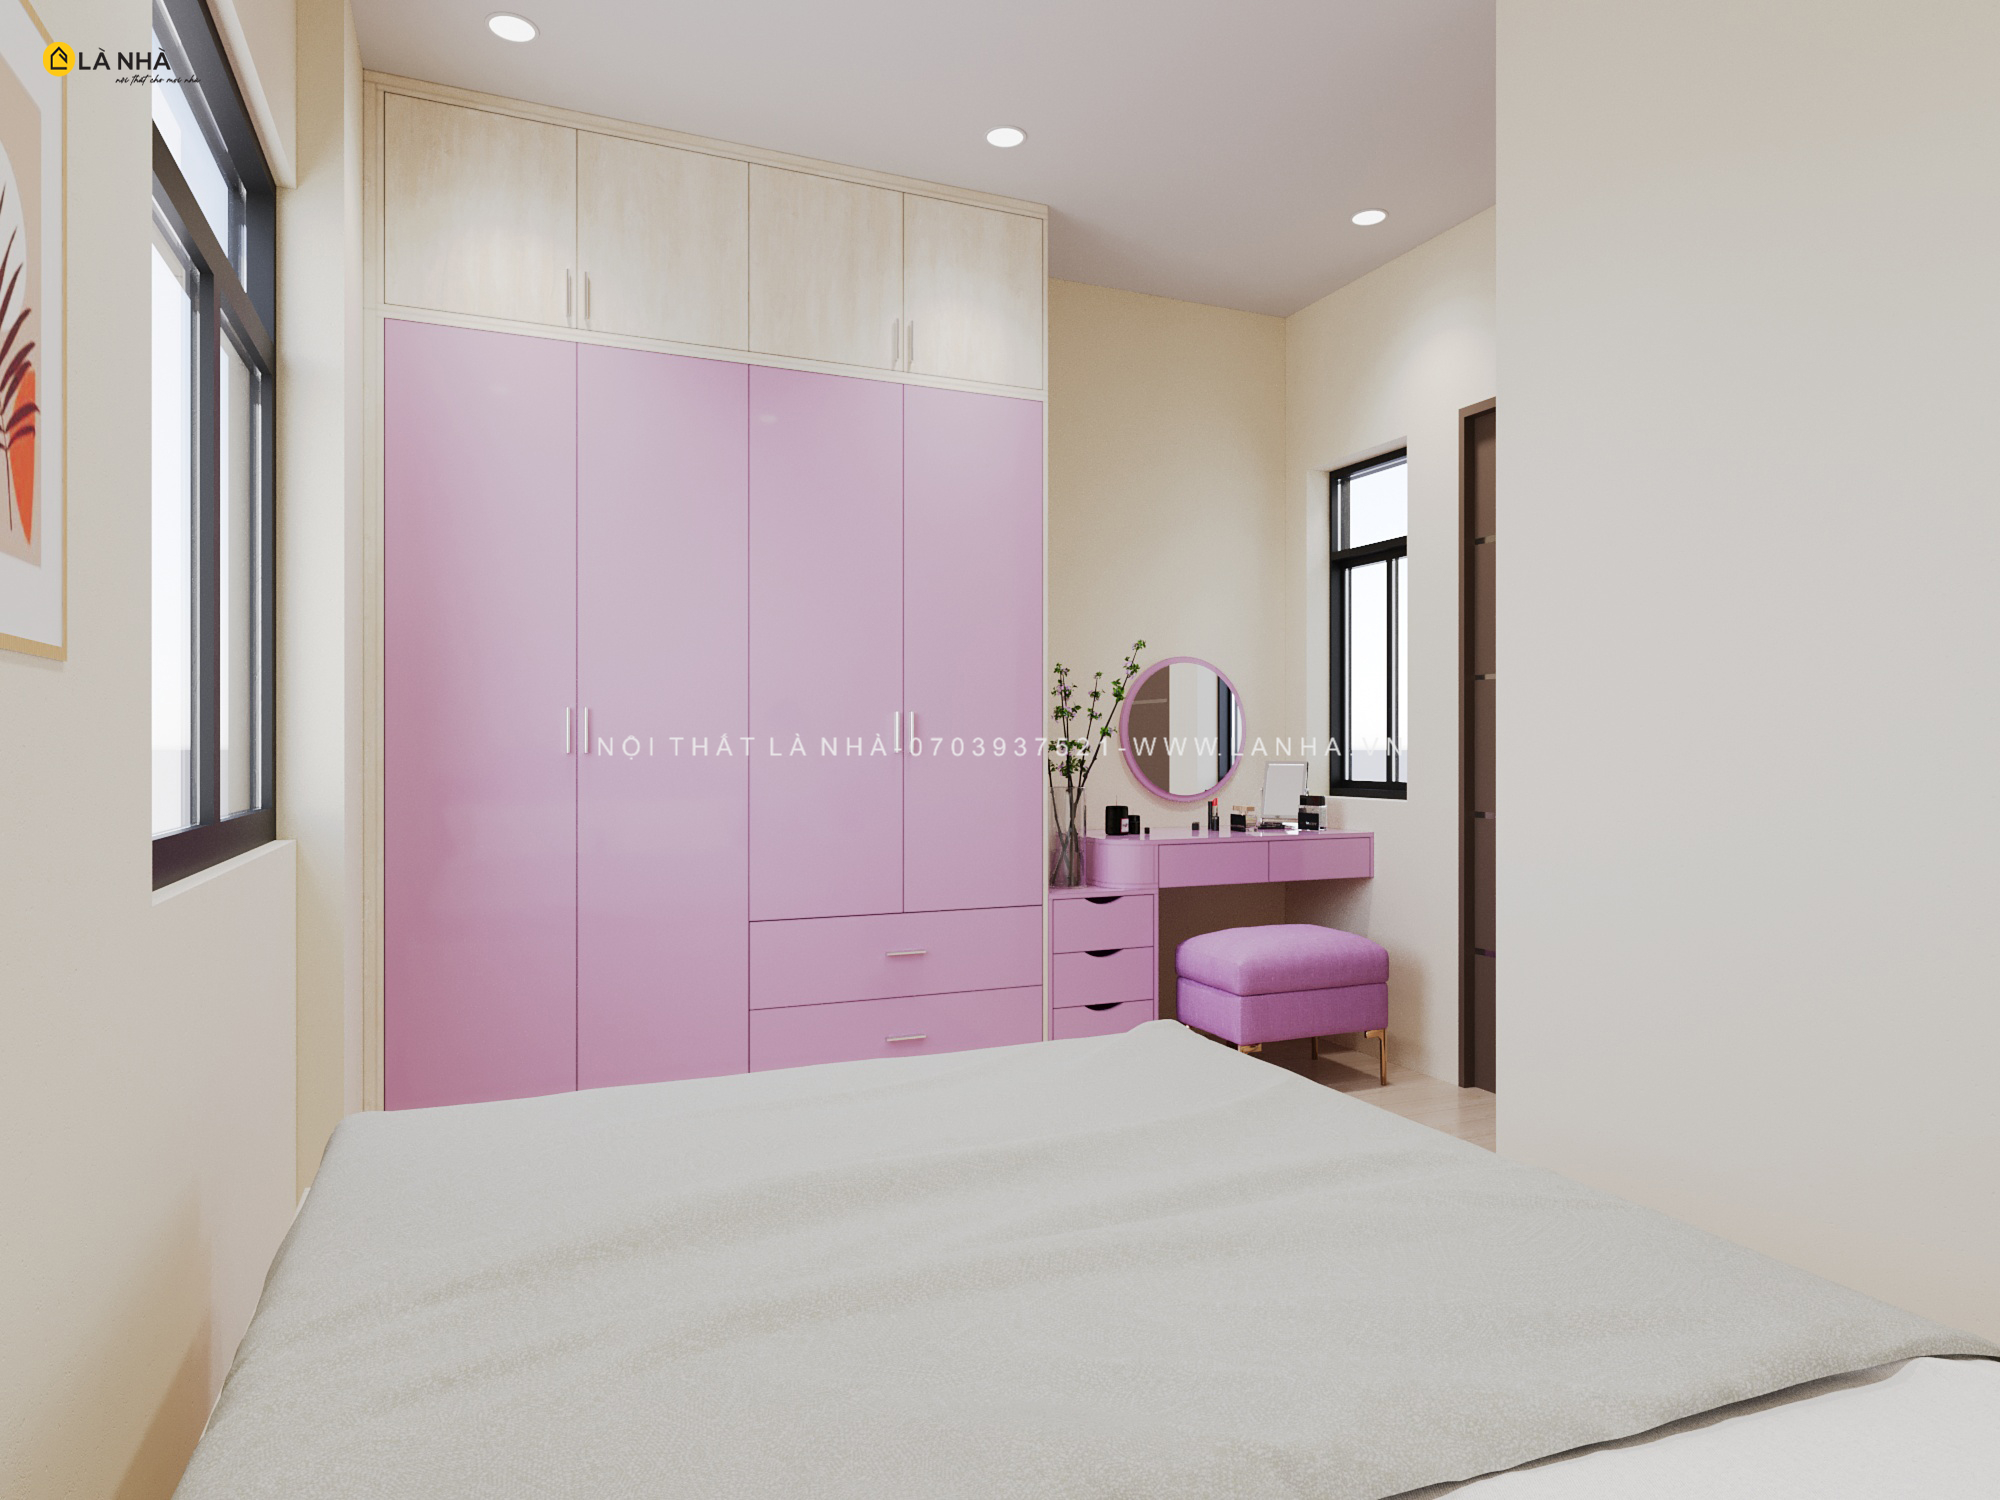 Sử dụng đồ nội thất màu tím trong thiết kế phòng ngủ